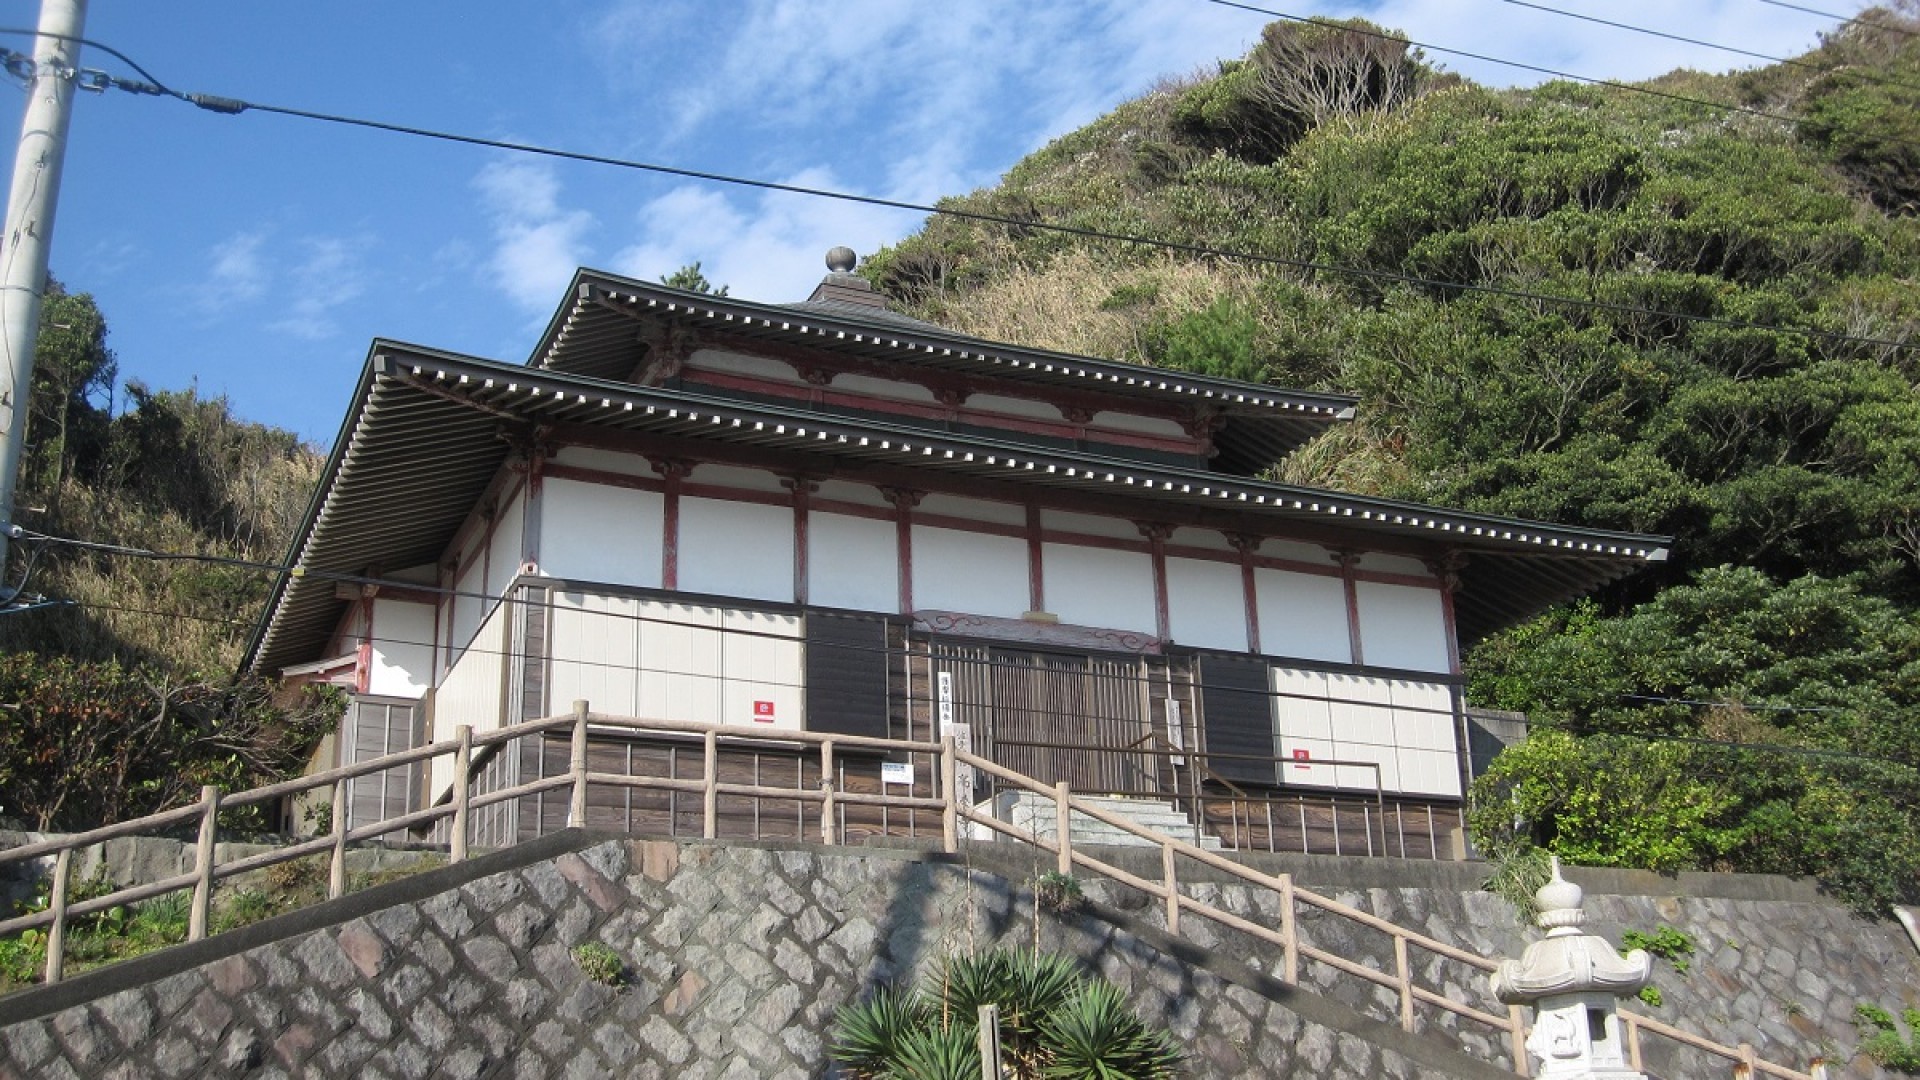 Kouyoji Temple (Namiko Fudo)